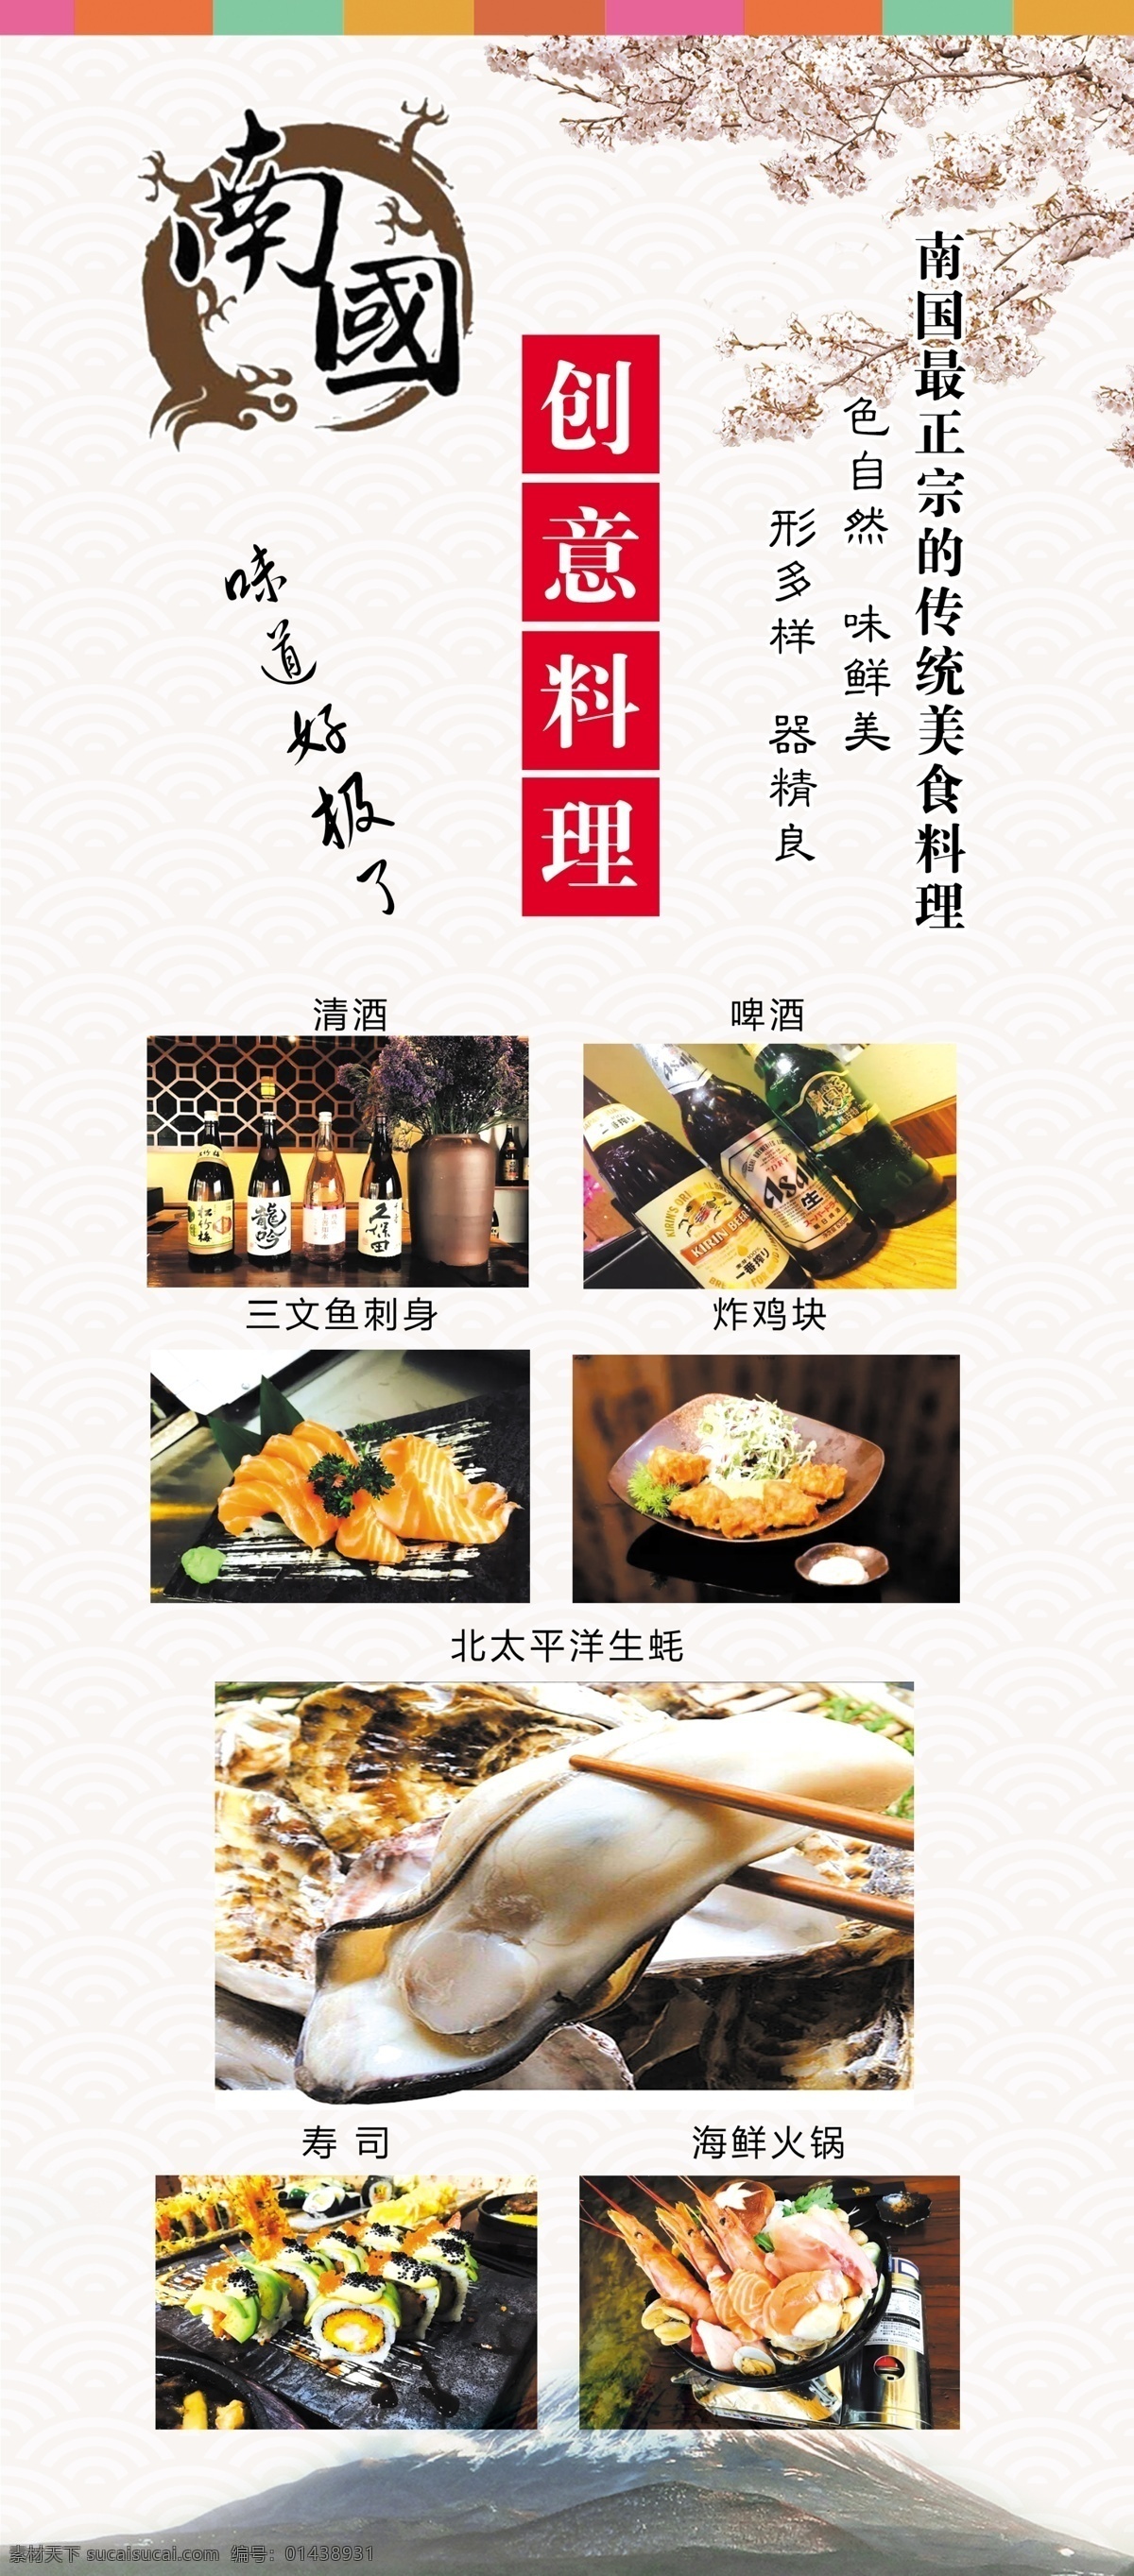 南国 创意 料理 日本 色 自然 味 鲜美 形 三文鱼 最 正宗 南国创意料理 日本料理 味道 好 极了 传统 美食 樱花 富士山 白色